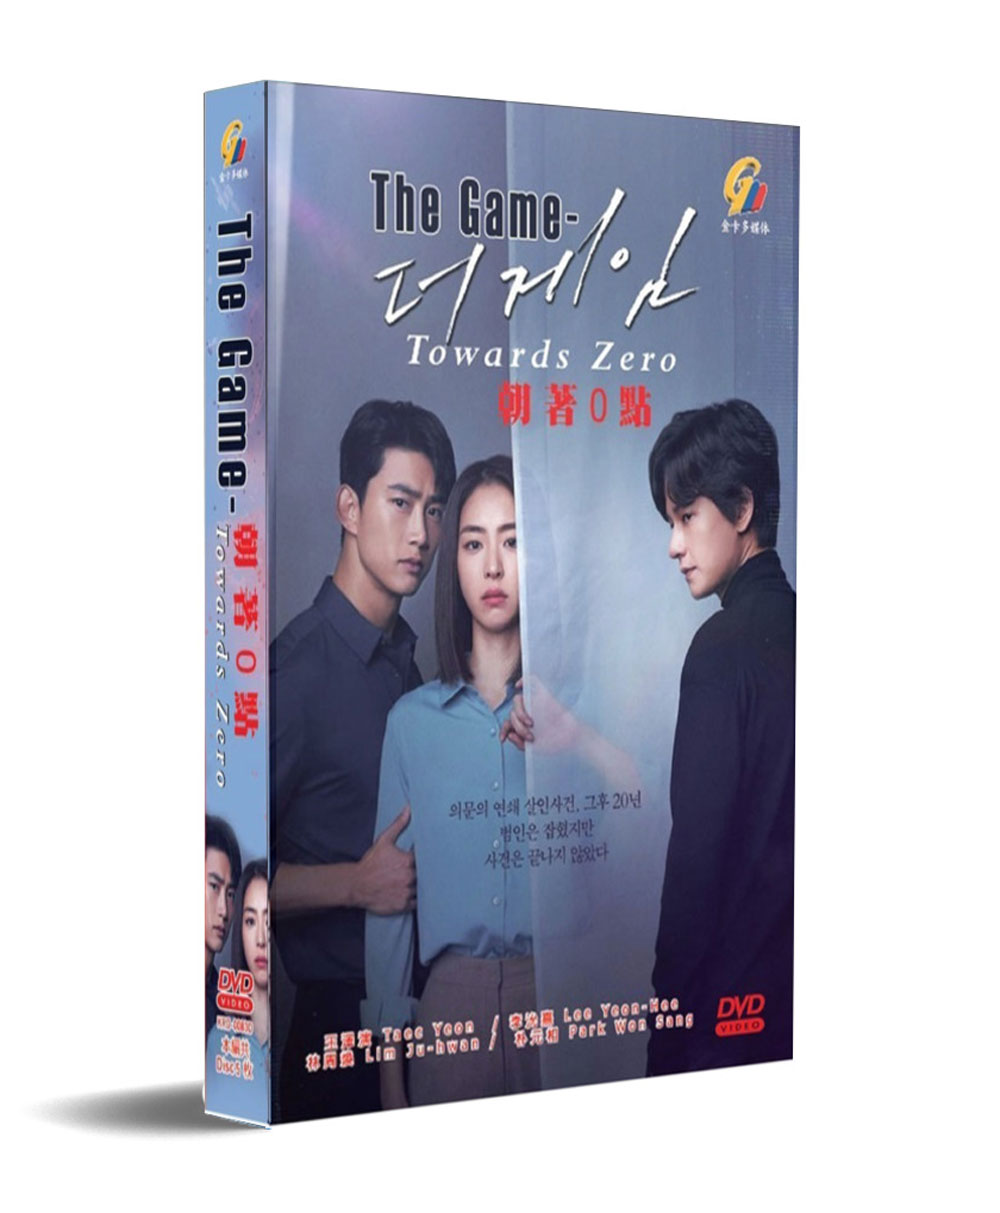 The Game: Towards Zero (DVD) (2020) 韓国TVドラマ